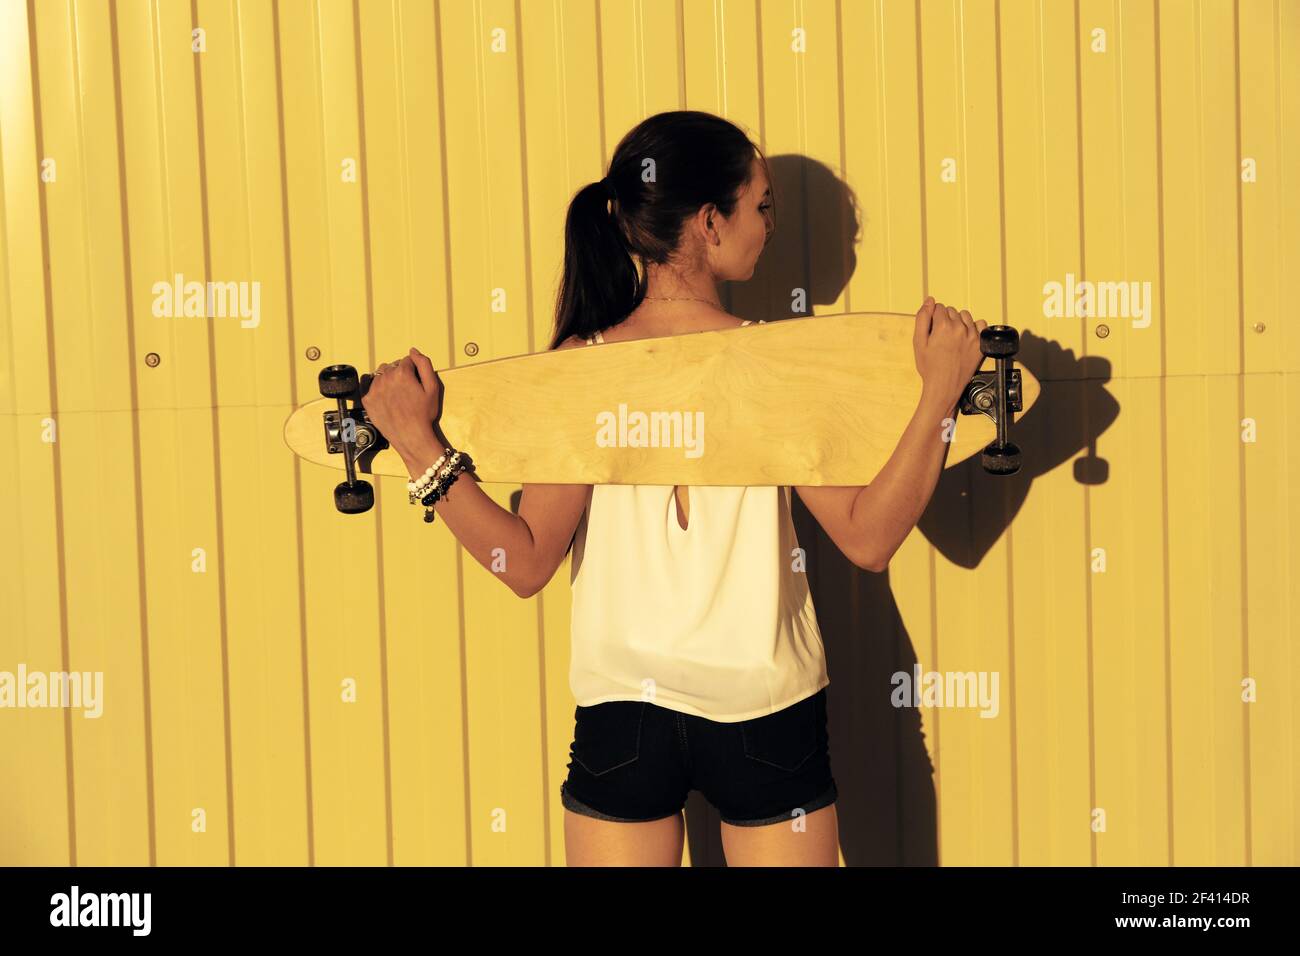 Jeune fille posant avec son skateboard derrière son dos en face de la clôture jaune avec l'espace d'imitation, vue arrière tourné. Jeune fille posant avec son skateboard derrière son dos en face de la clôture jaune avec l'espace d'imitation, vue arrière Banque D'Images